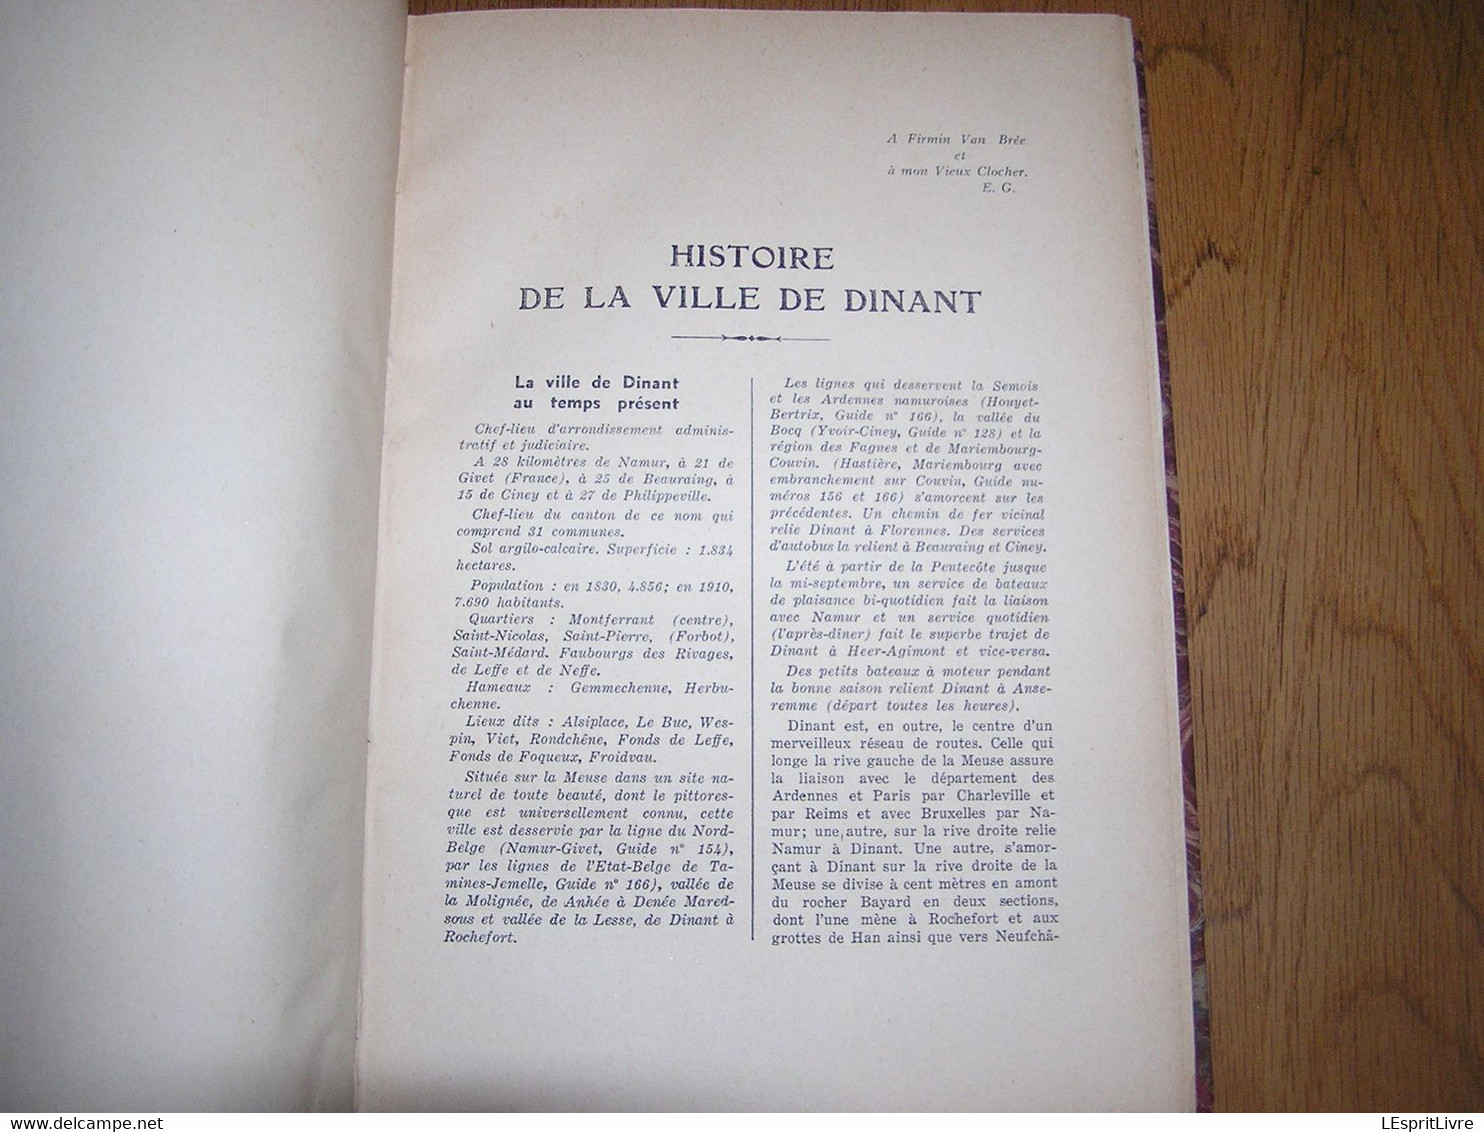 HISTOIRE DE LA VILLE DE DINANT Edouard Gérard 1936 Régionalisme Métiers Organisation Militaire Hopitaux Vie Religieuse - Belgique